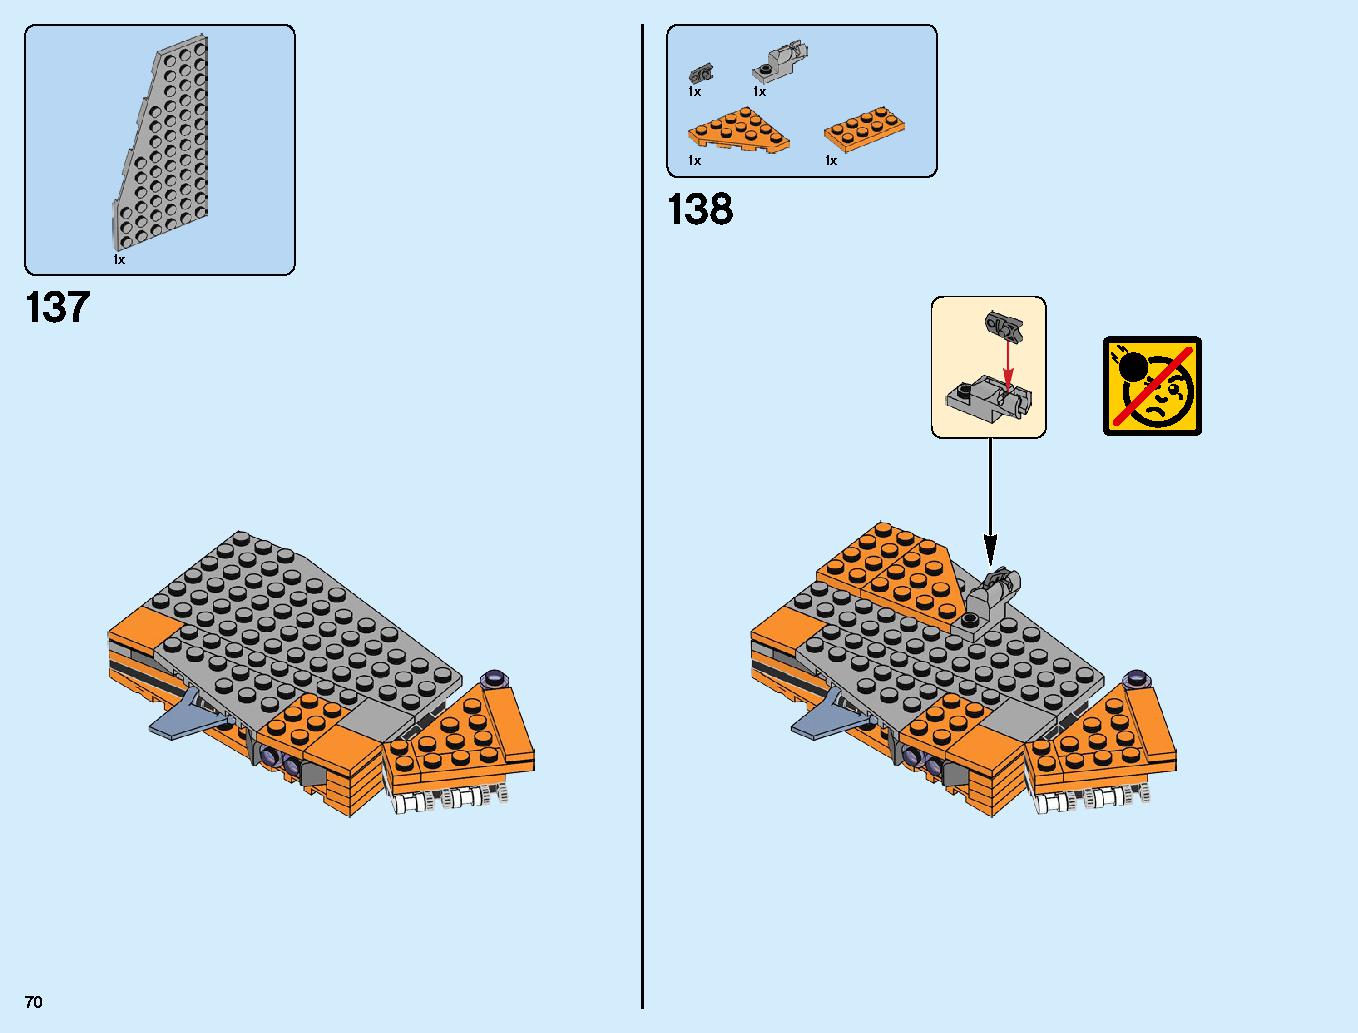 어벤져스 타노스: 최후의 전투 76107 레고 세트 제품정보 레고 조립설명서 70 page